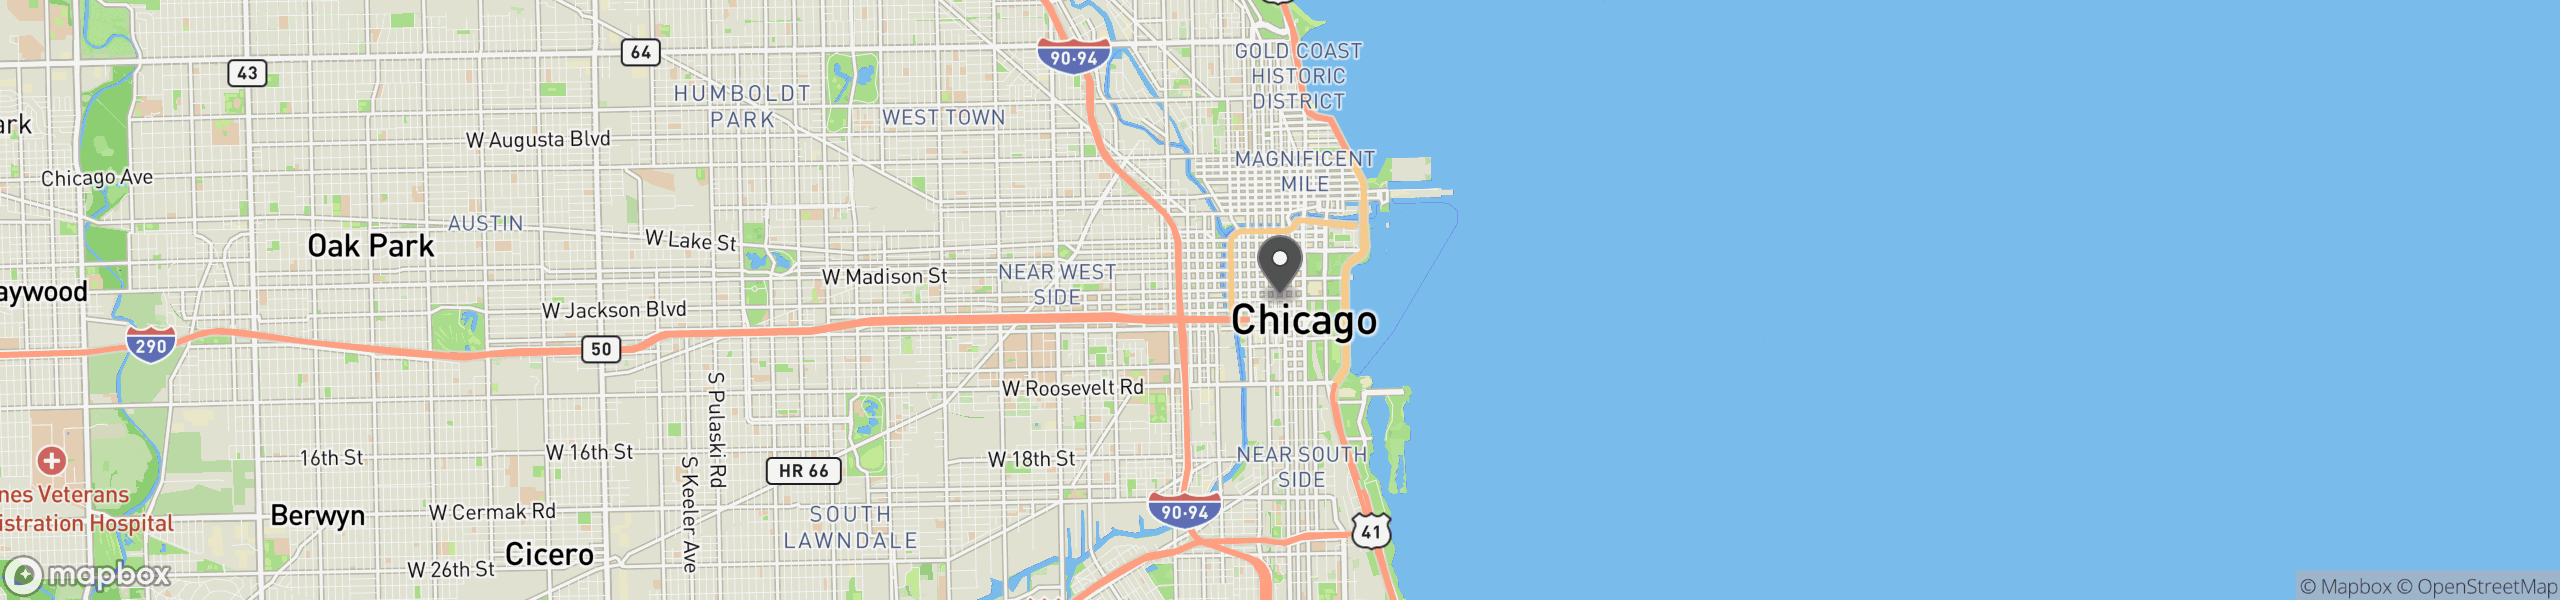 Chicago, IL 60604